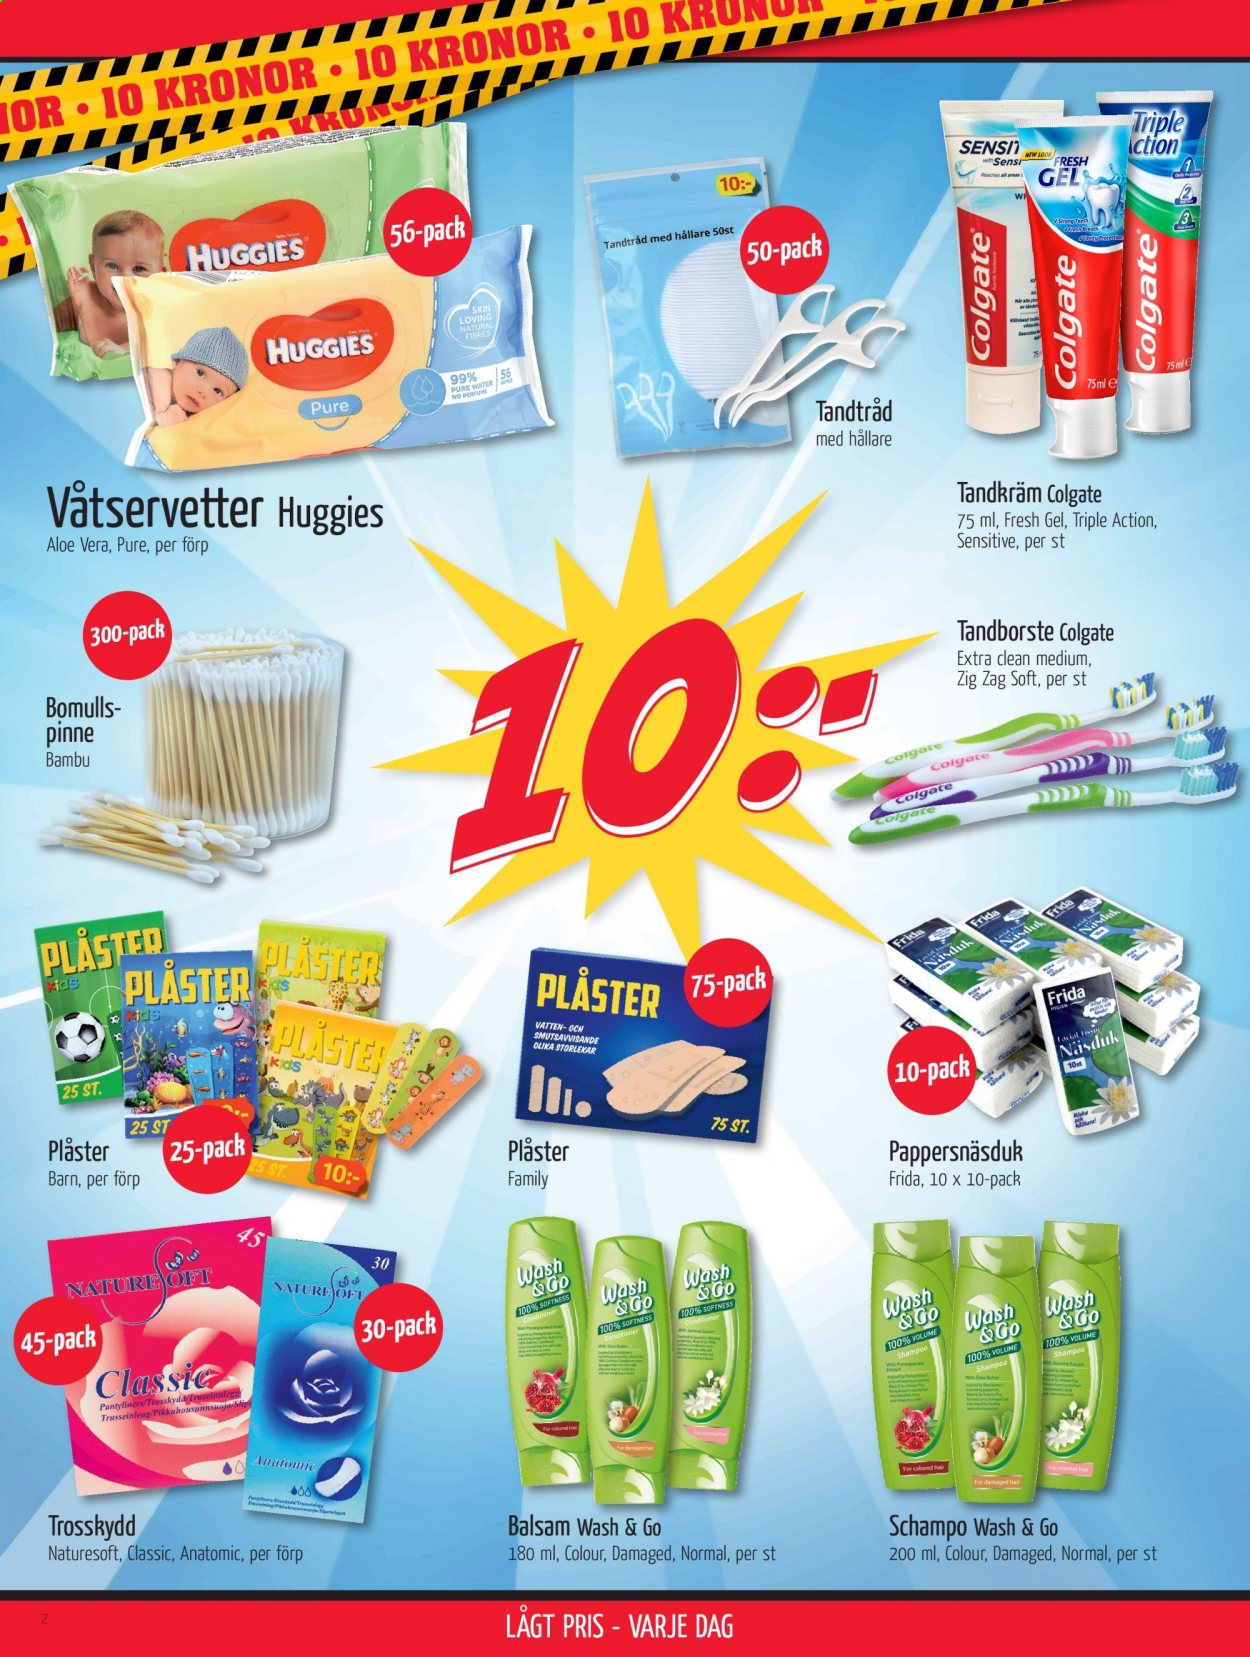 thumbnail - DollarStore reklamblad - varor från reklamblad - New Look, Huggies, pappersnäsdukar, våtservetter, shampoo, schampo, Colgate, tandborste, tandkräm, tandtråd, trosskydd, balsam, shea butter, hårbalsam, plåster. Sida 2.